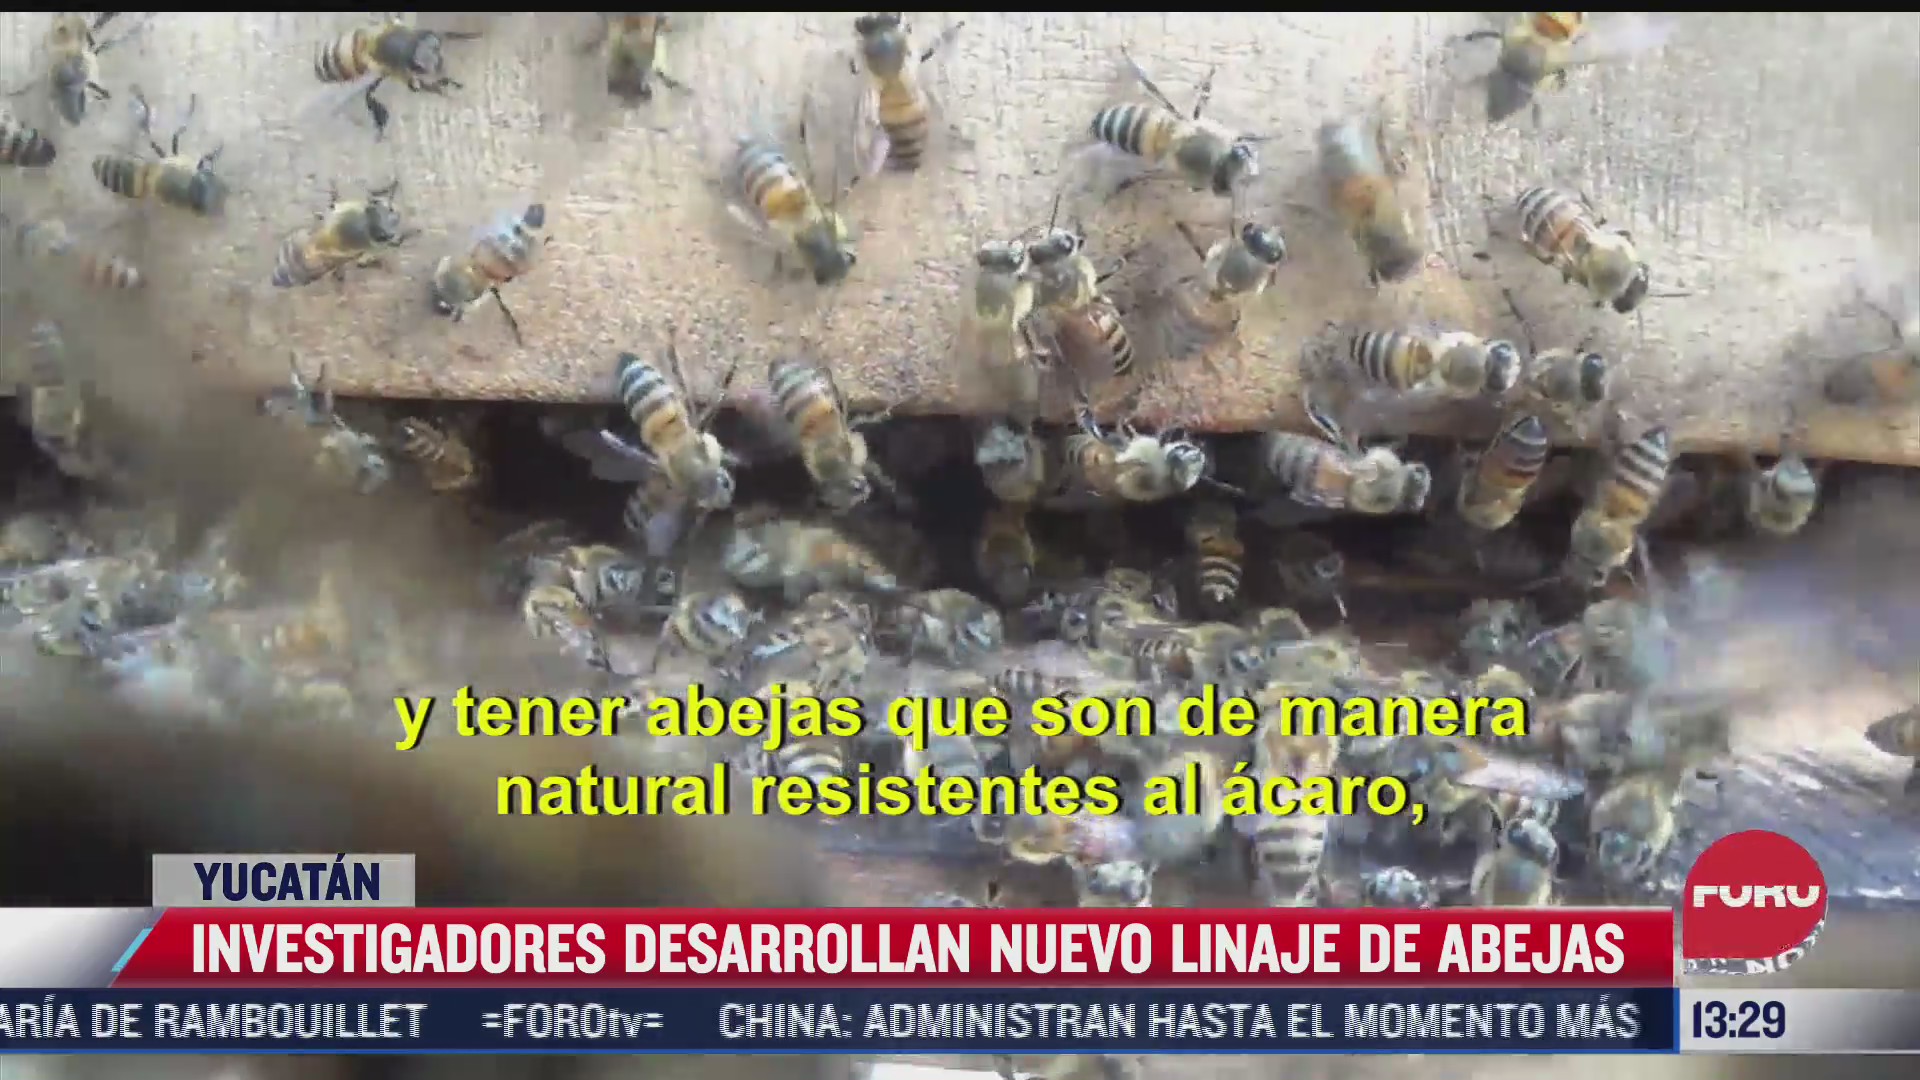 investigadores desarrollaron un nuevo linaje de abejas en yucatan